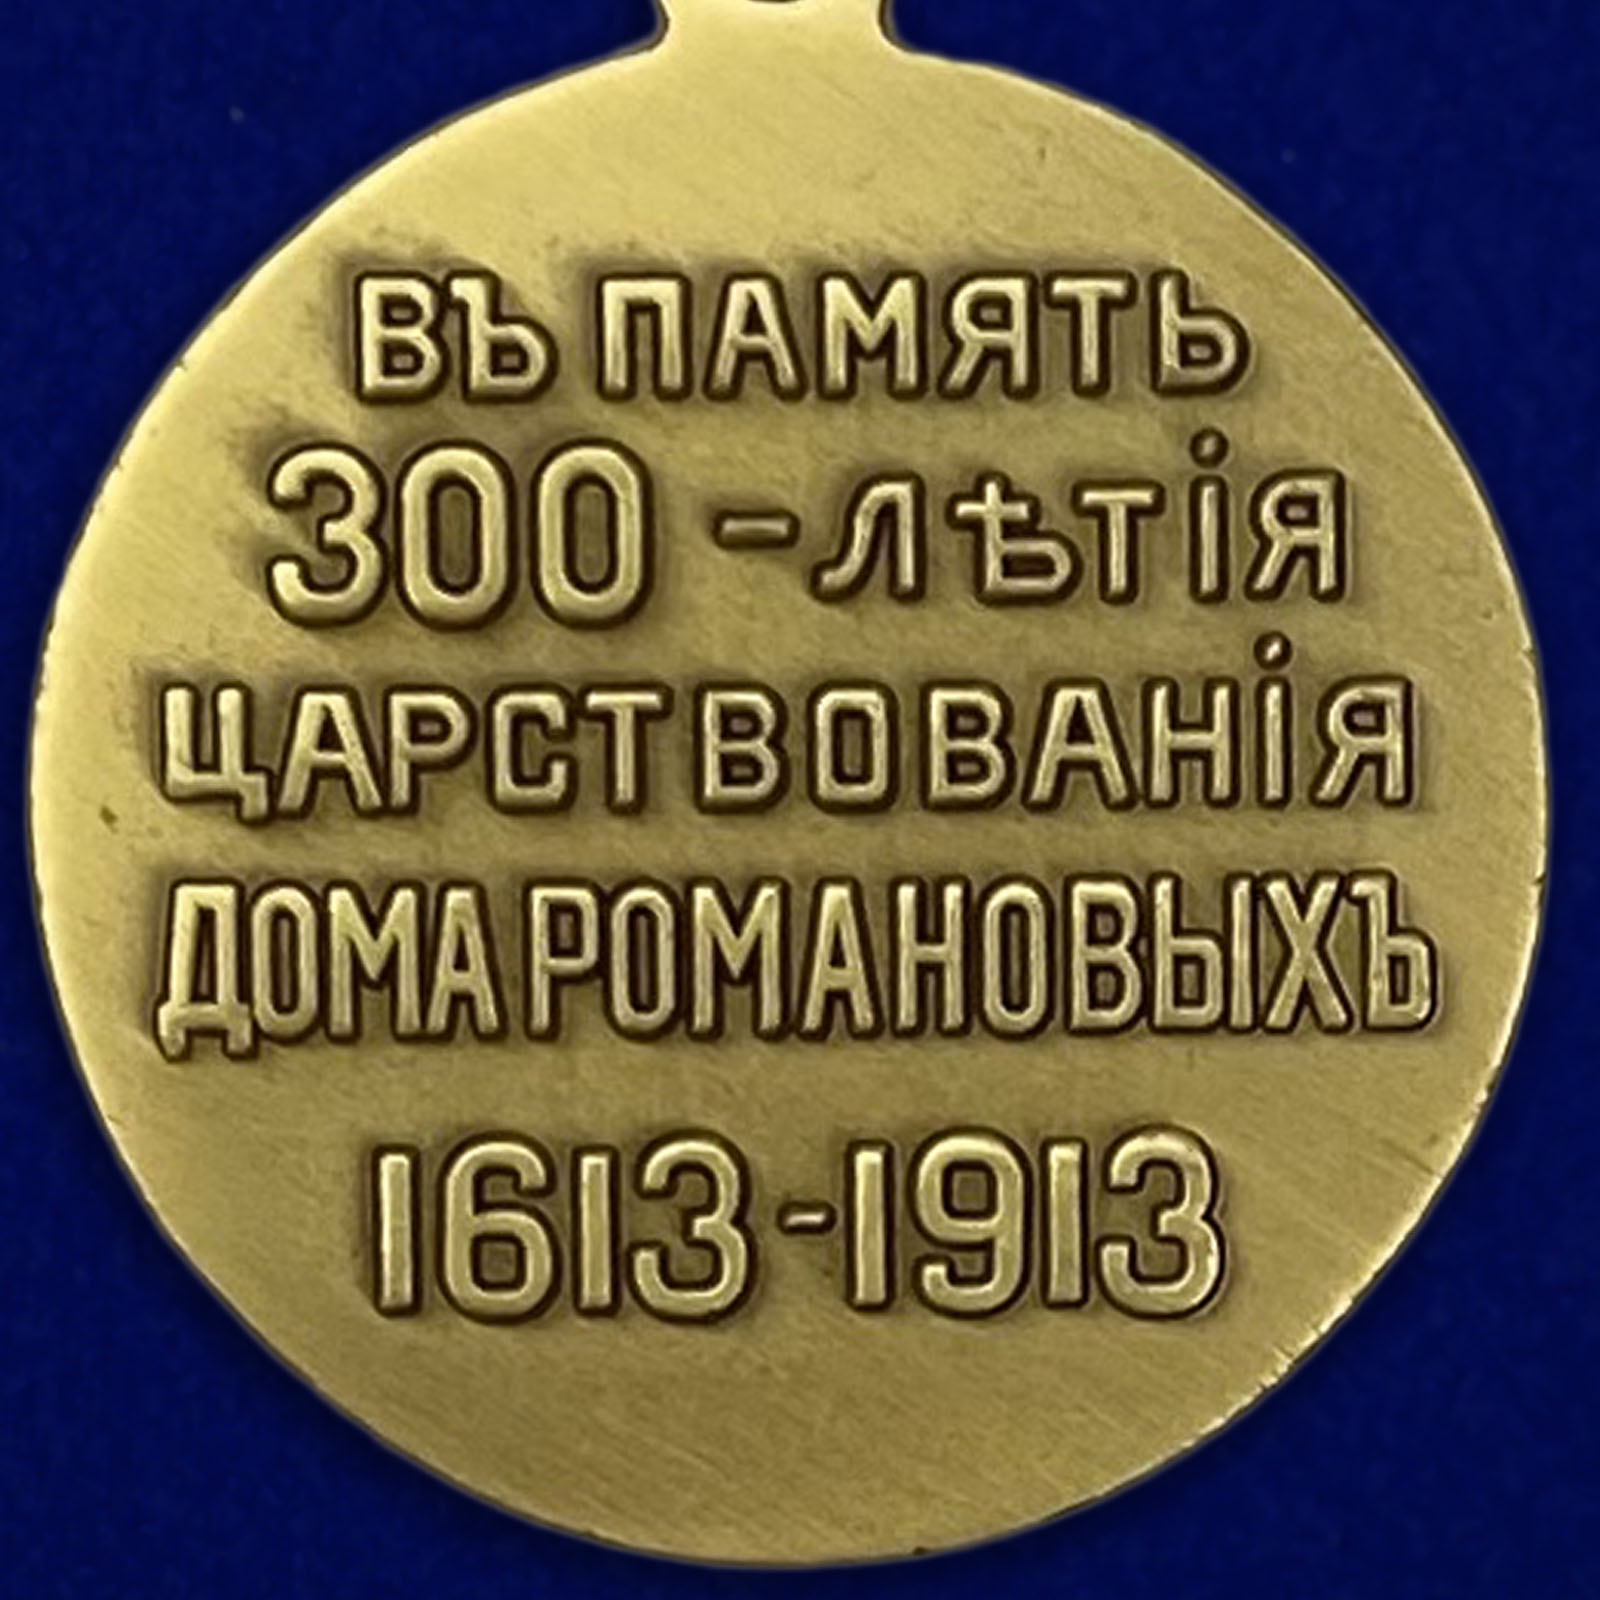 Описание медали "В память 300-летия царствования дома Романовых"